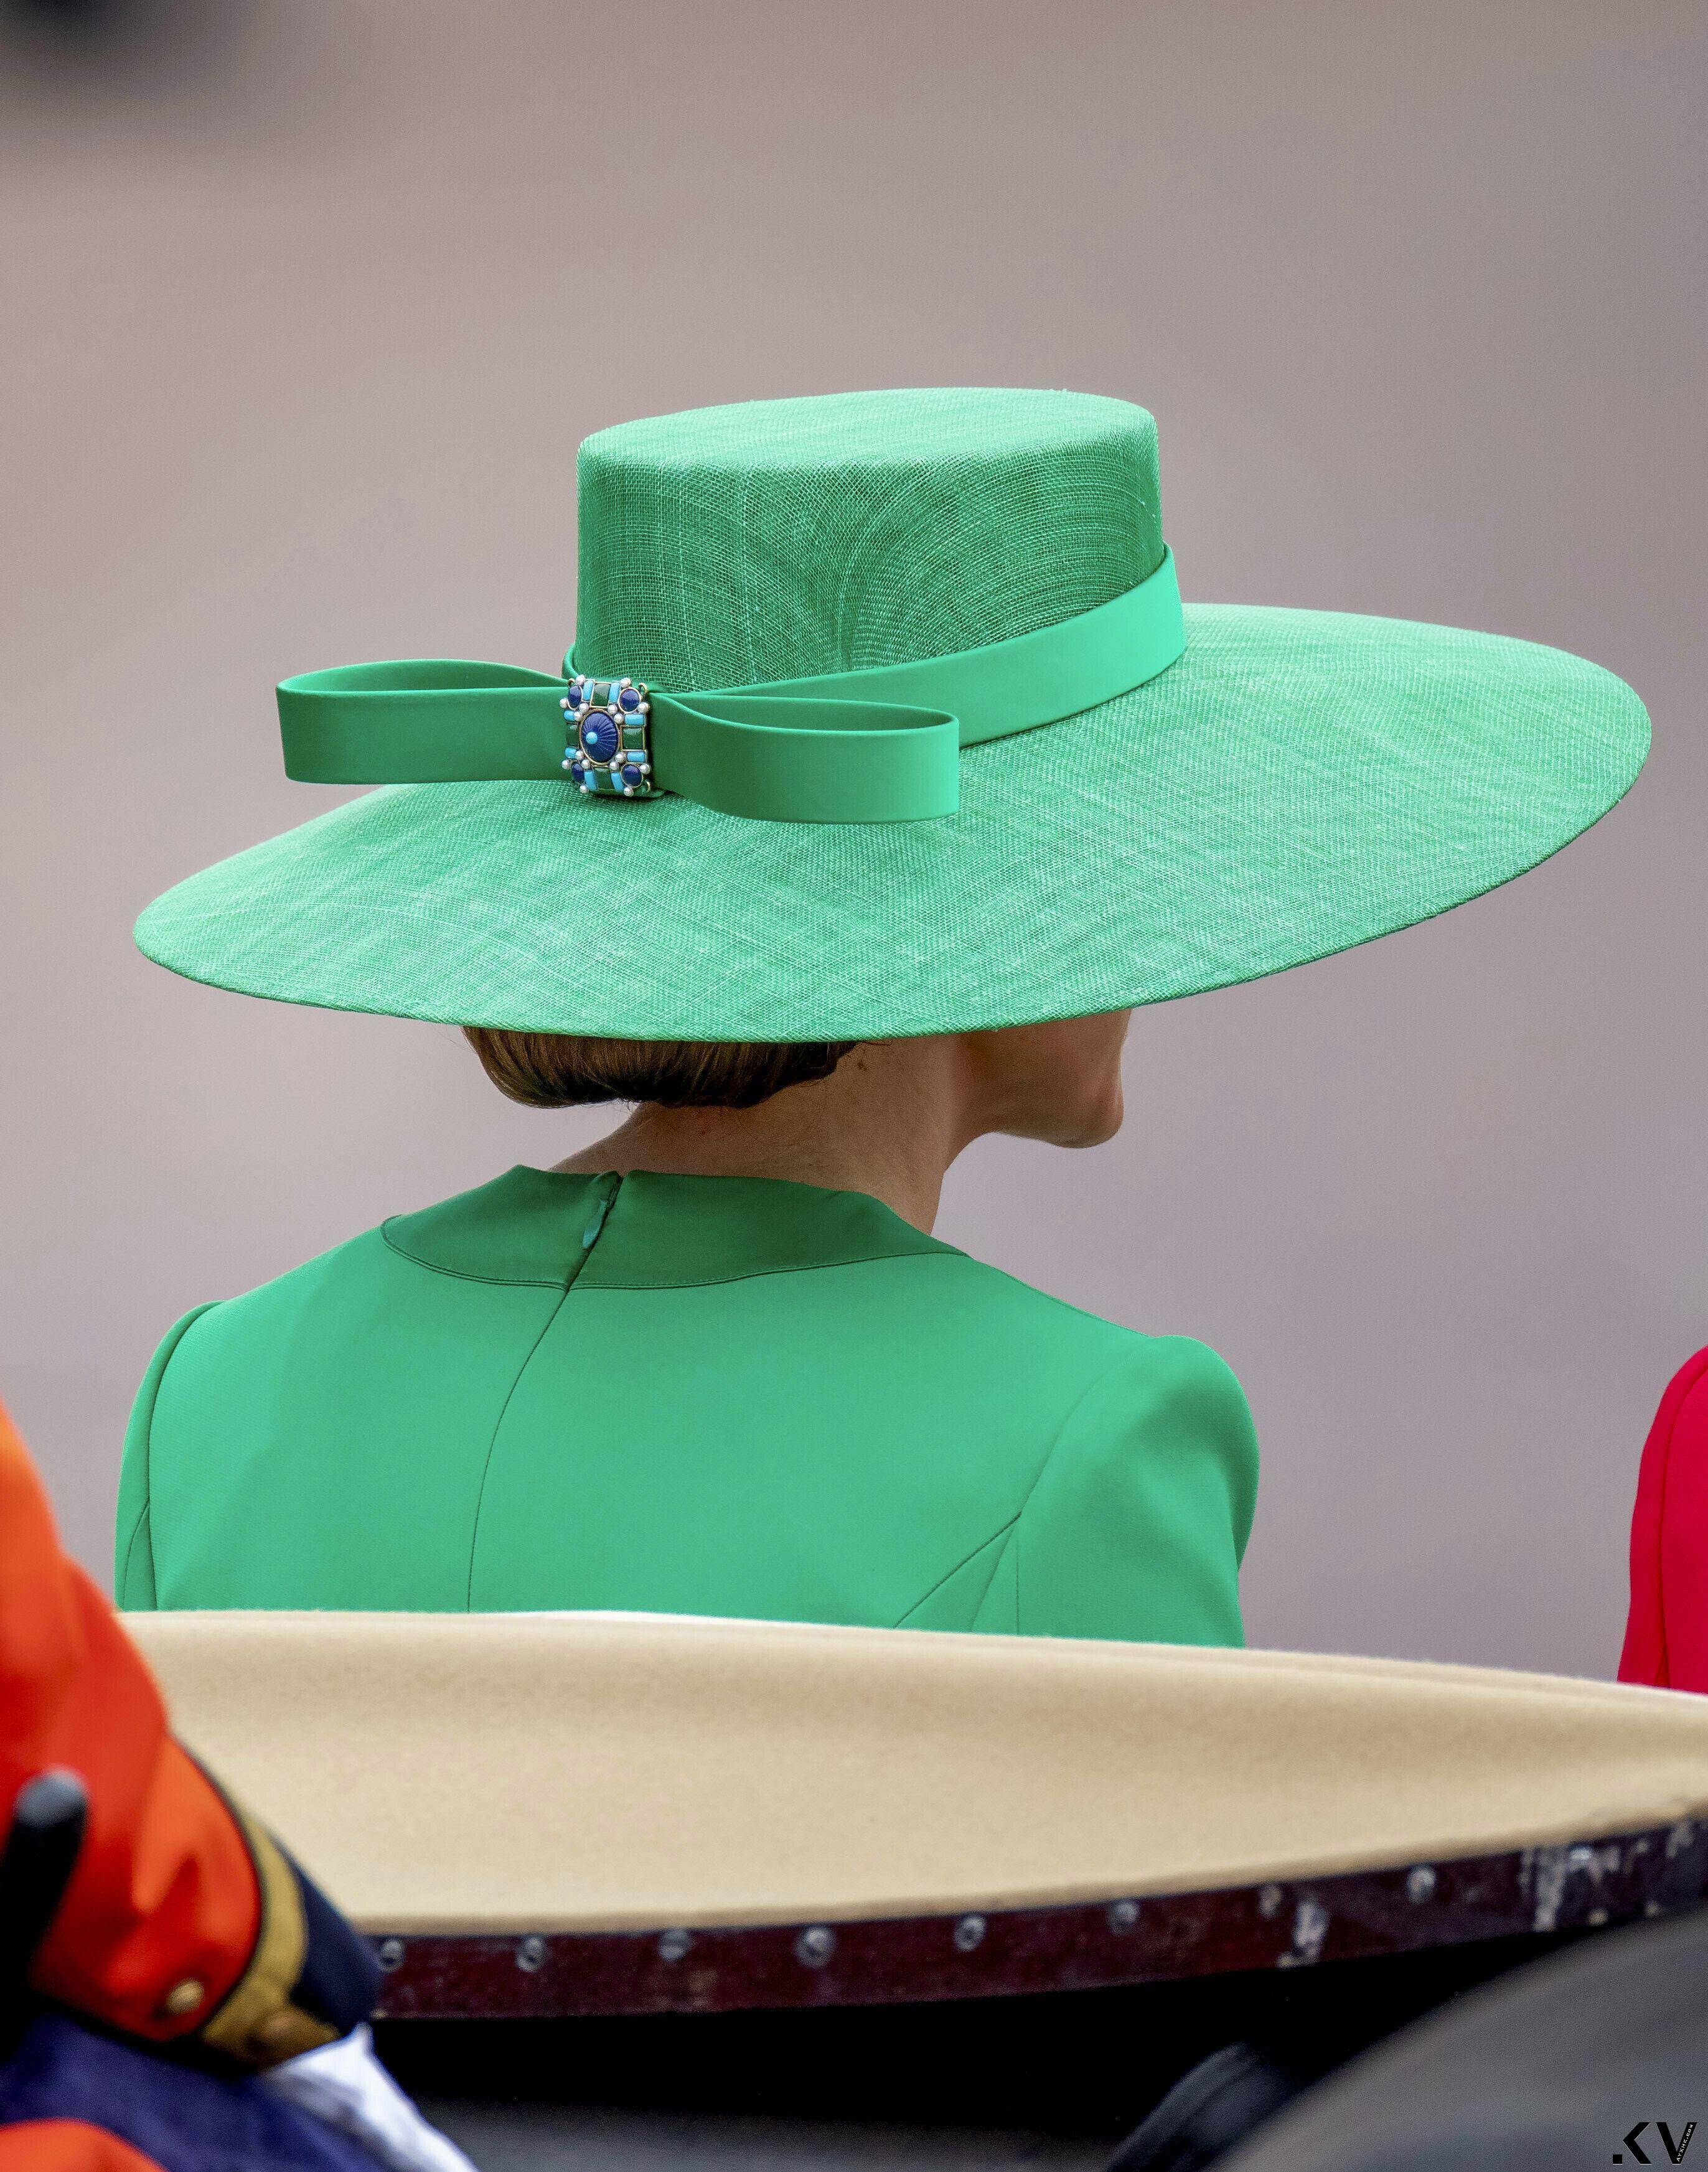 凯特王妃11万绿衣凸显“爱尔兰卫队上校”身分　么儿阅兵敬礼萌翻 名人名流 图3张